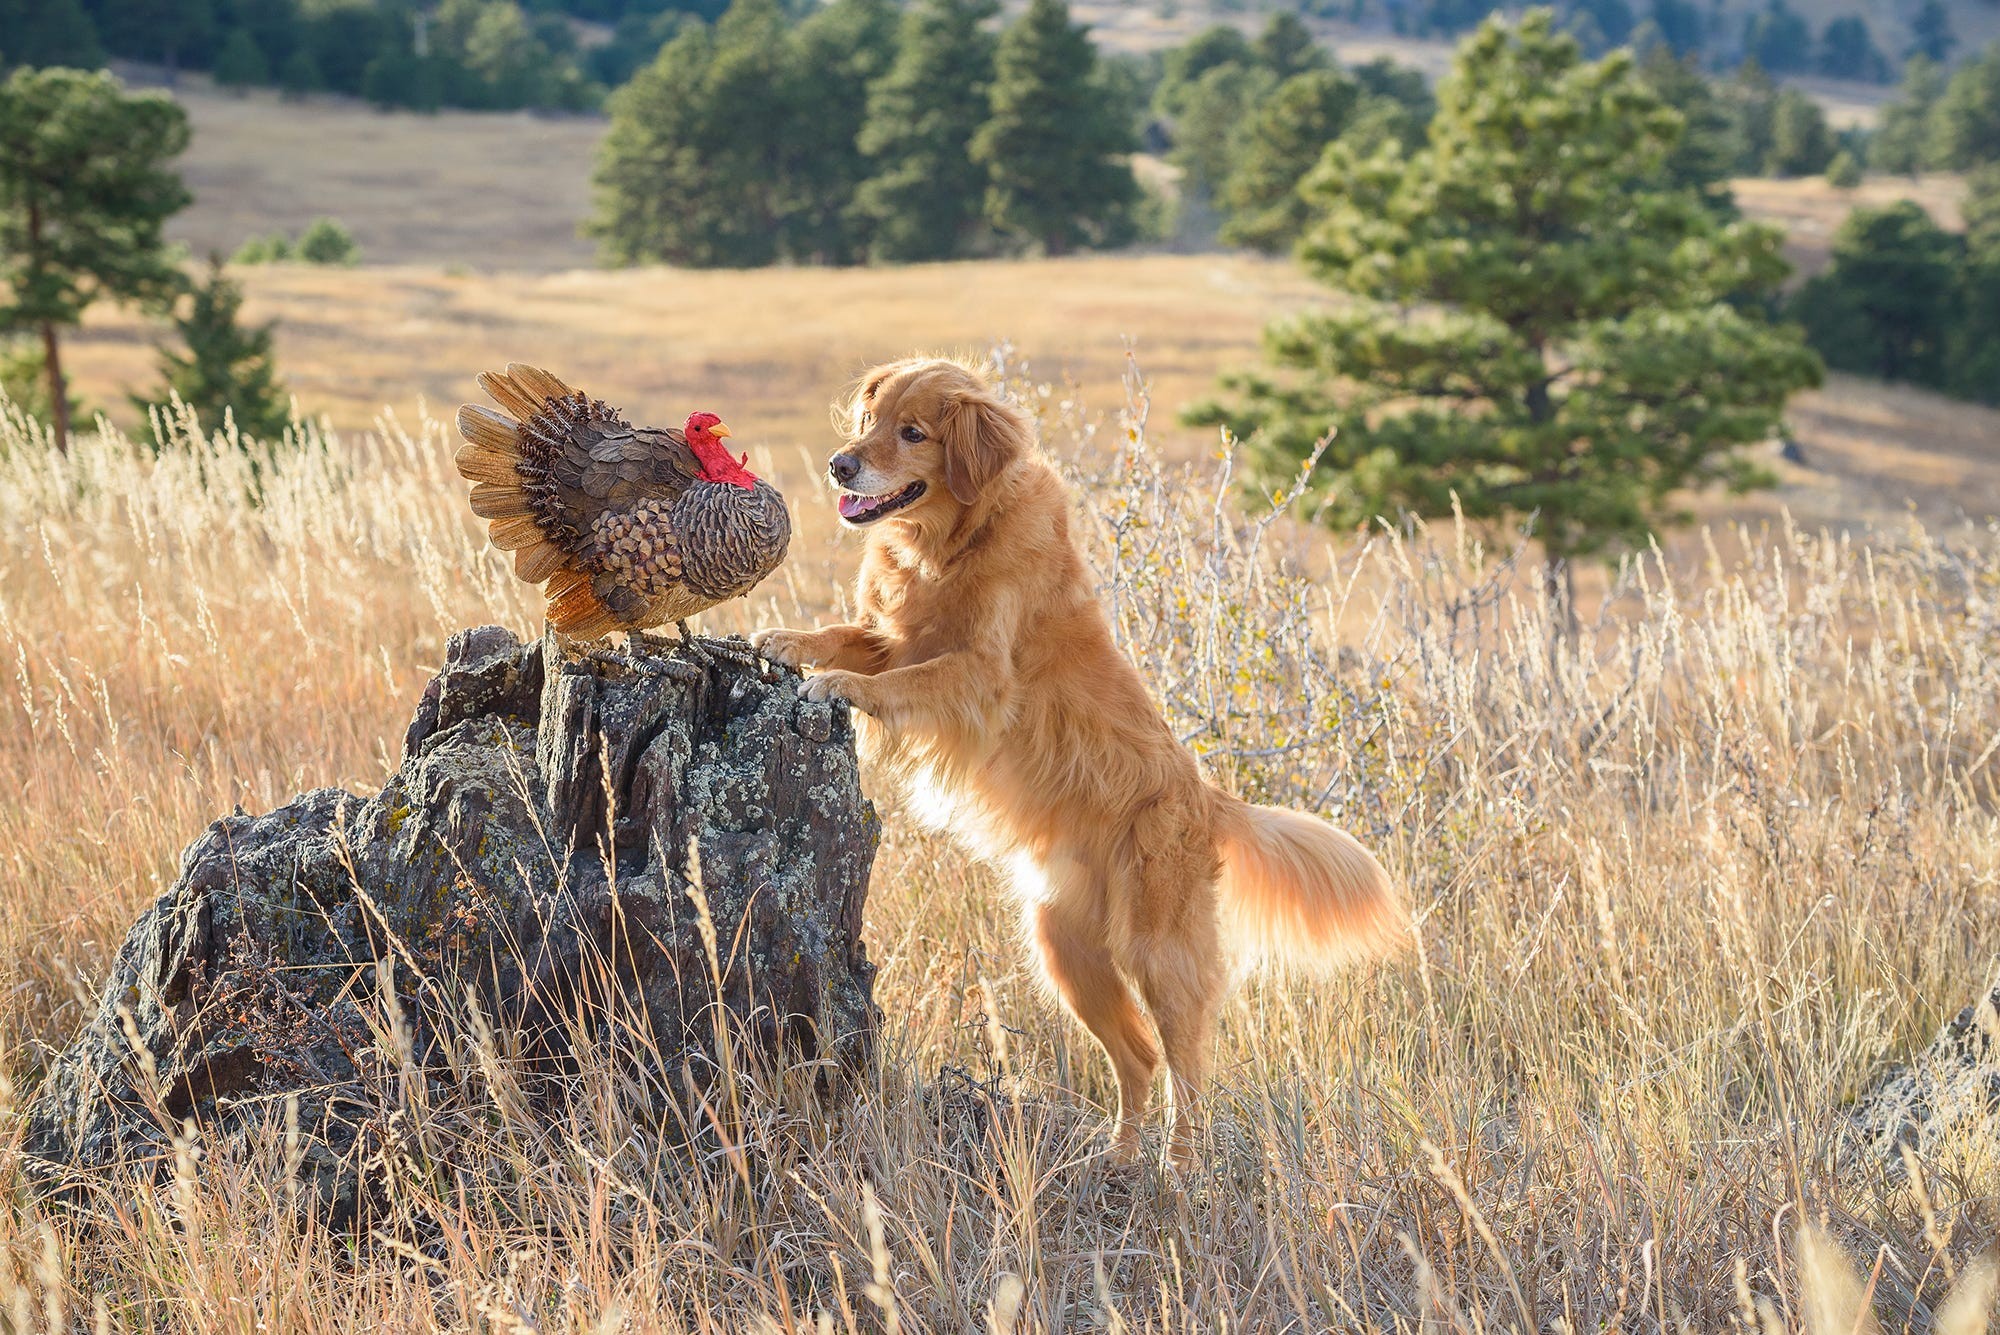 Собака бросает охоту и заводит друга. Фотограф Карен Хоглунд